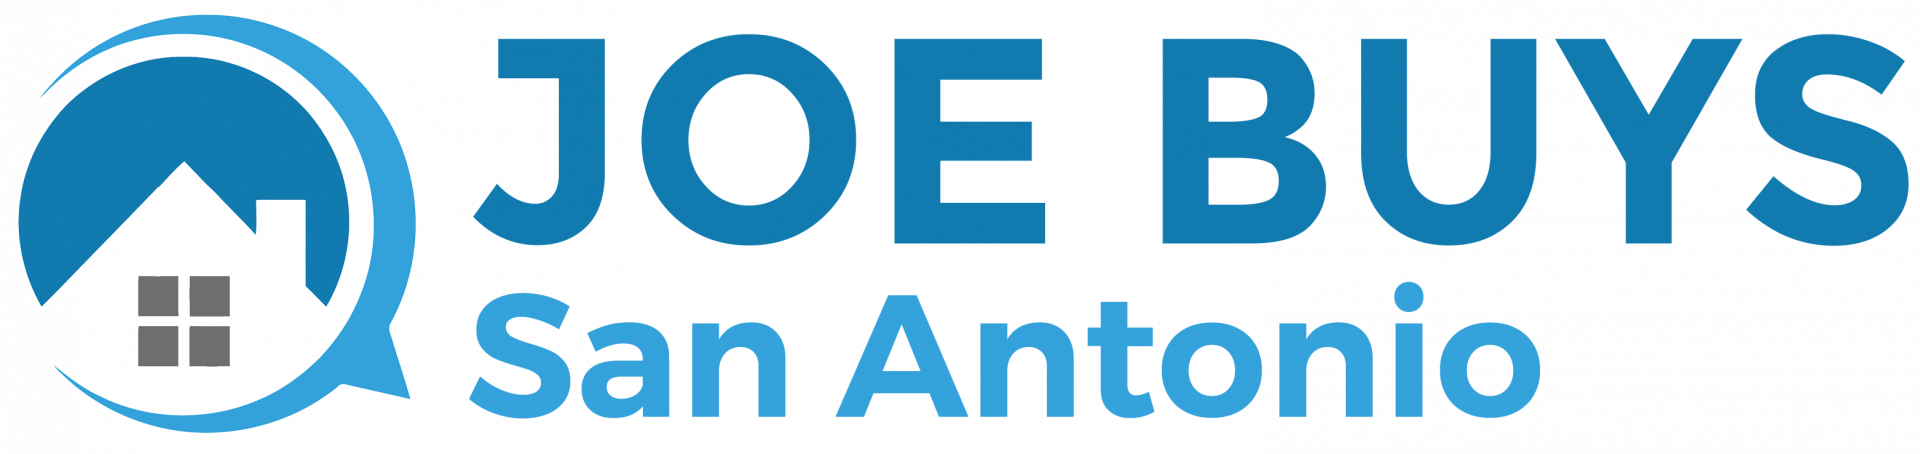 Joe Buys San Antonio logo